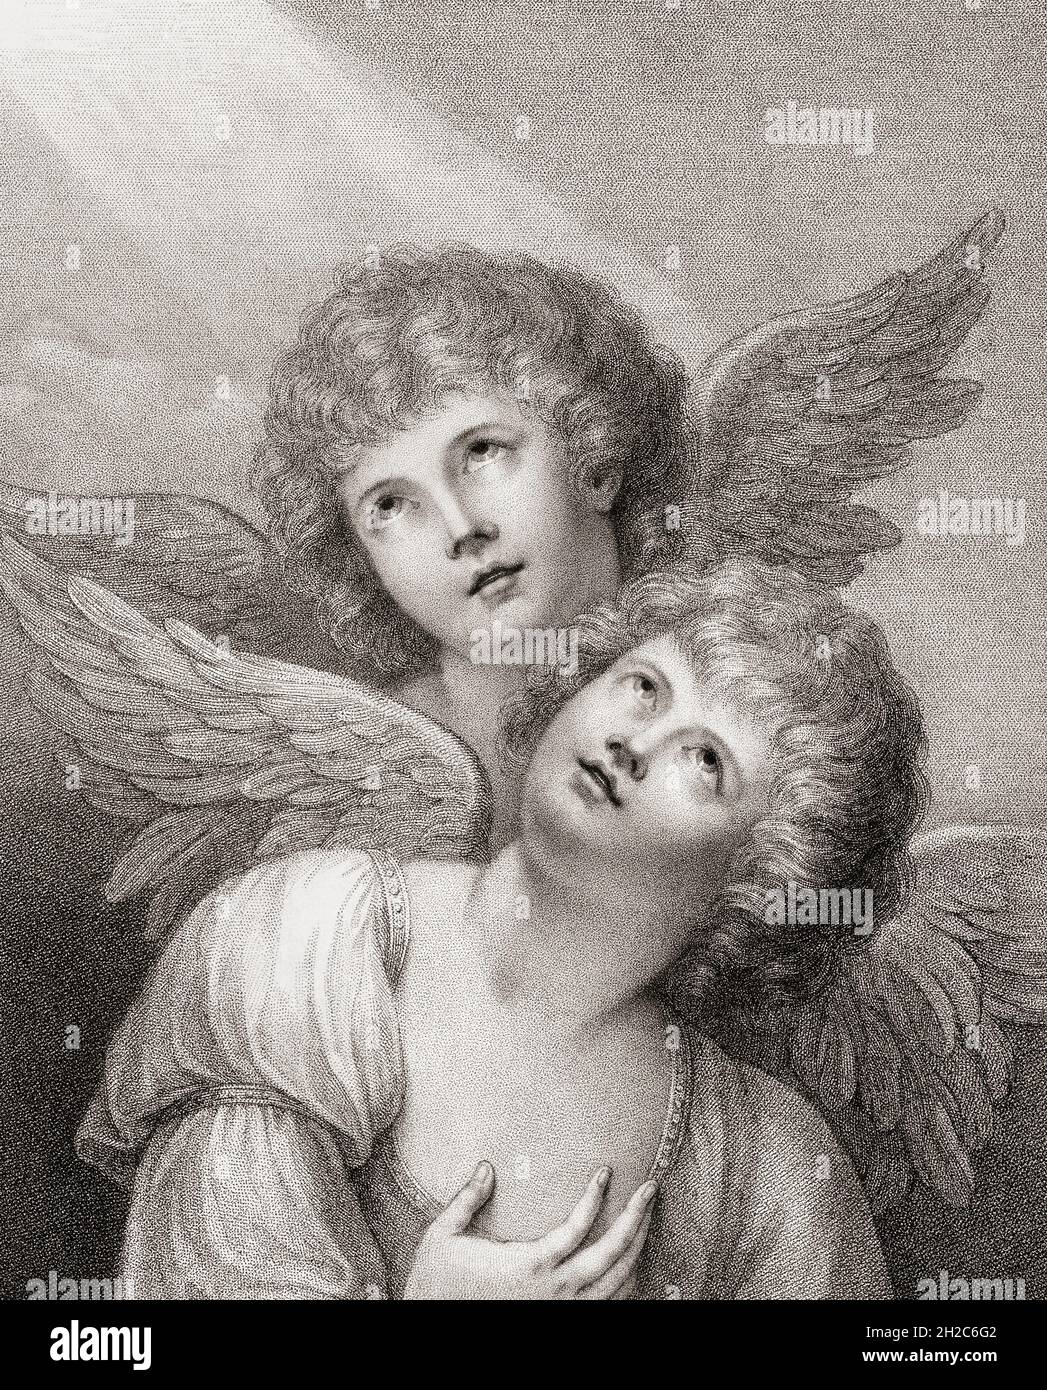 Zwei Cherubim. Zwei Engel. Nach einem Stich von Francesco Bartolozzi aus dem späten 18. Jahrhundert nach einem Werk von Matthew William Peters. Stockfoto